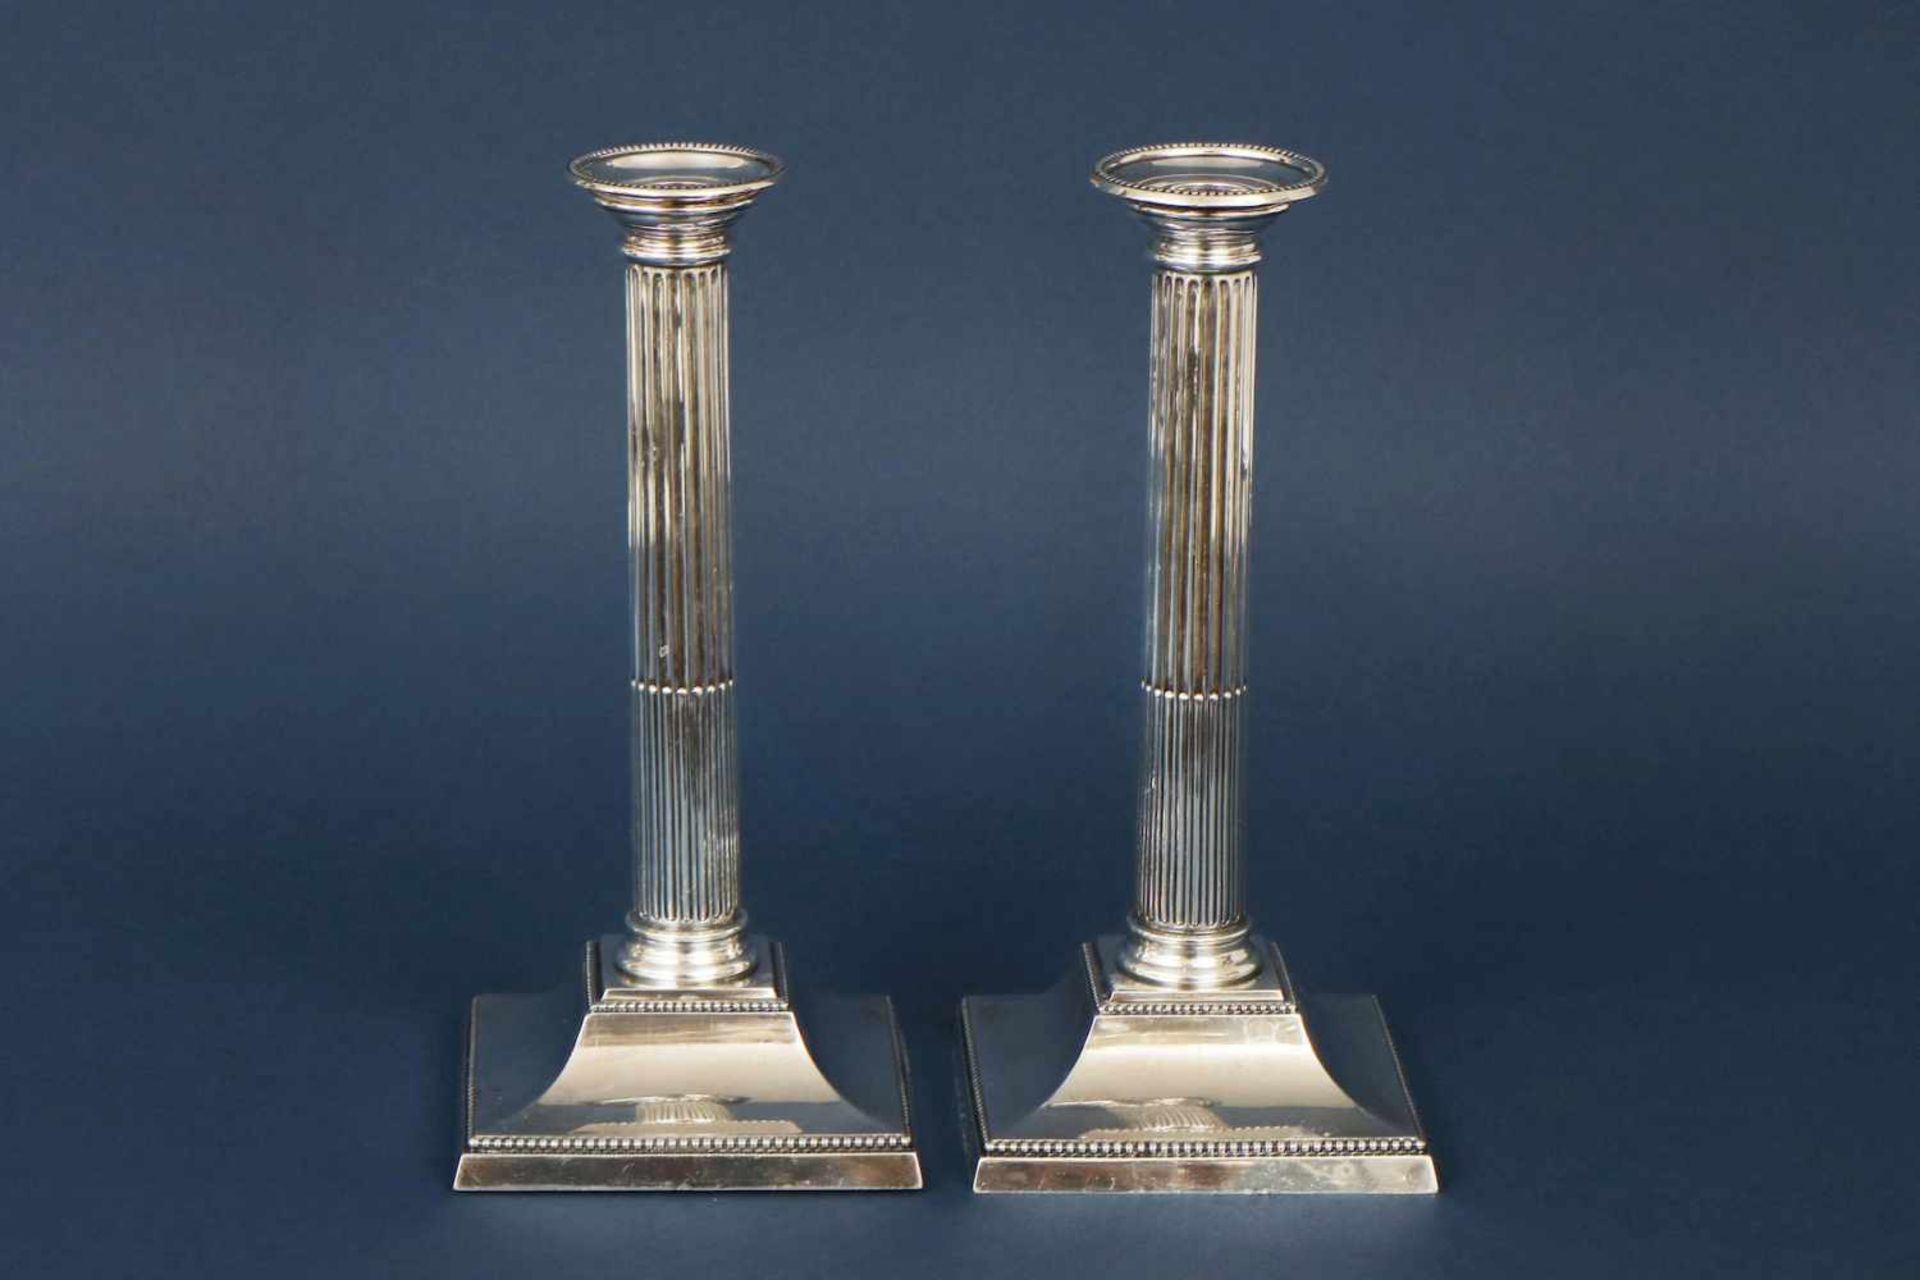 Paar KerzenleuchterSterling Silber, London, 1896, klassizistischer Stil, Säulenform auf eckigem